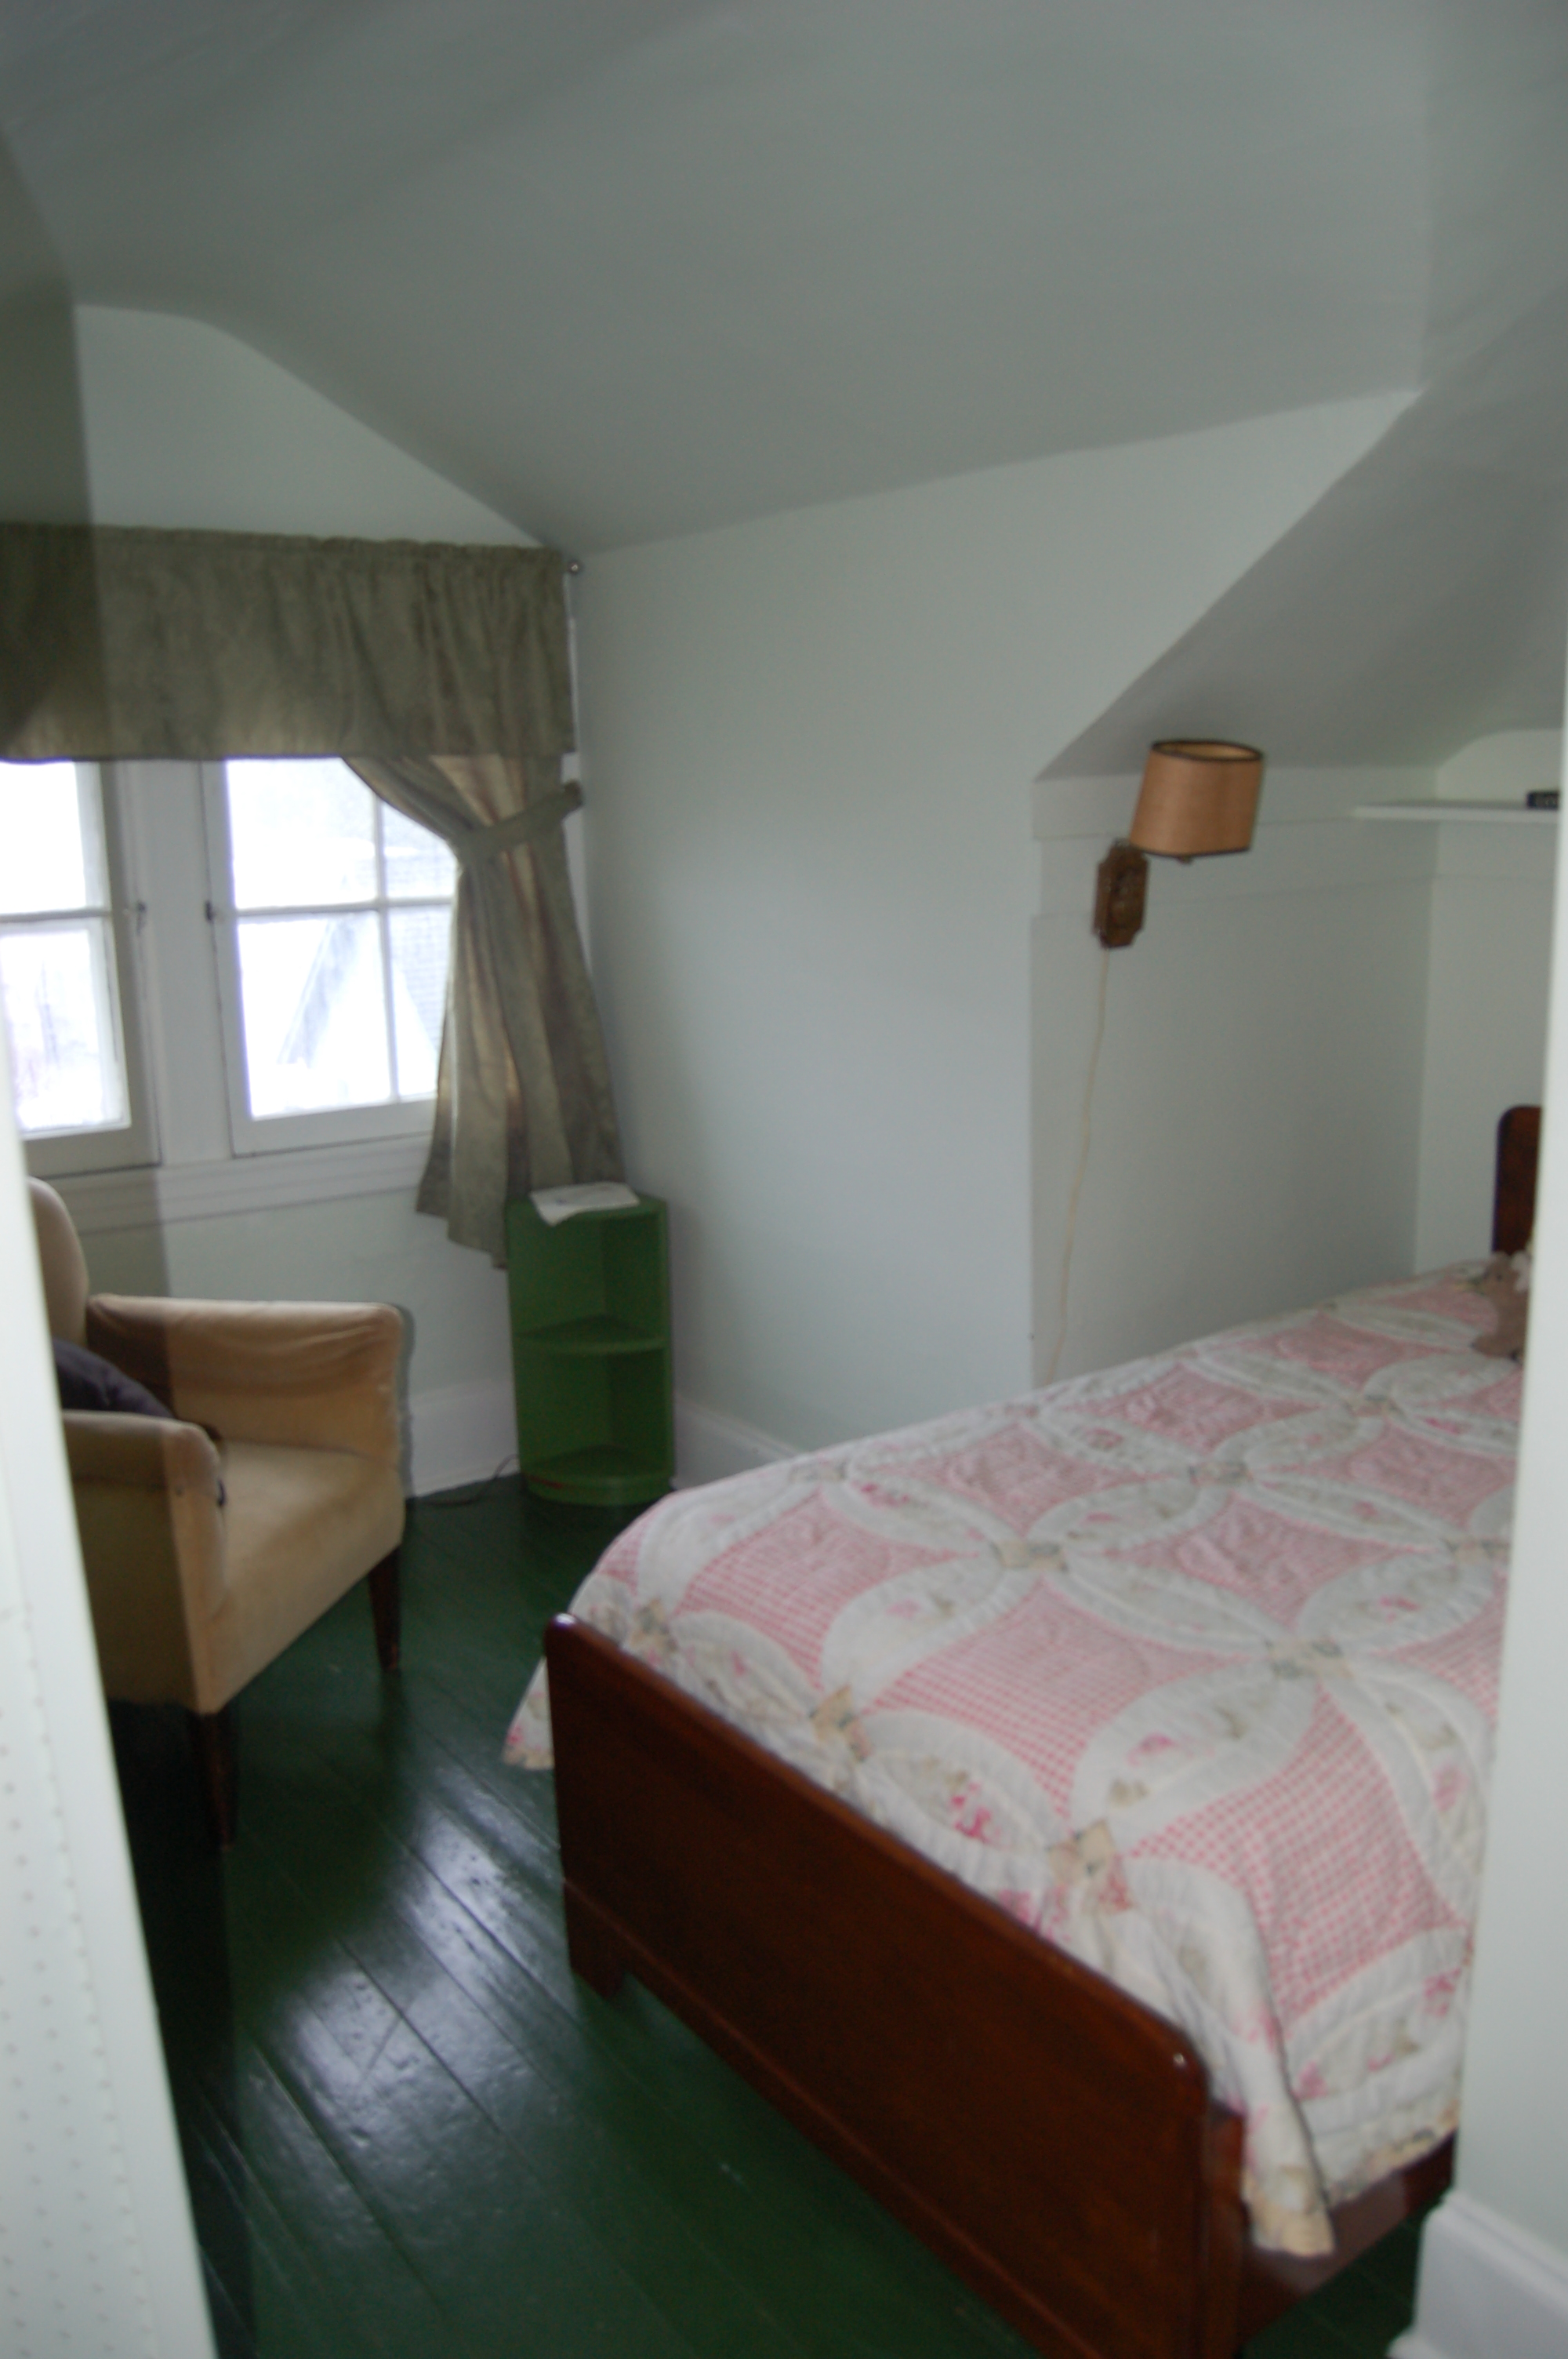 Huttlinger House - Green Room